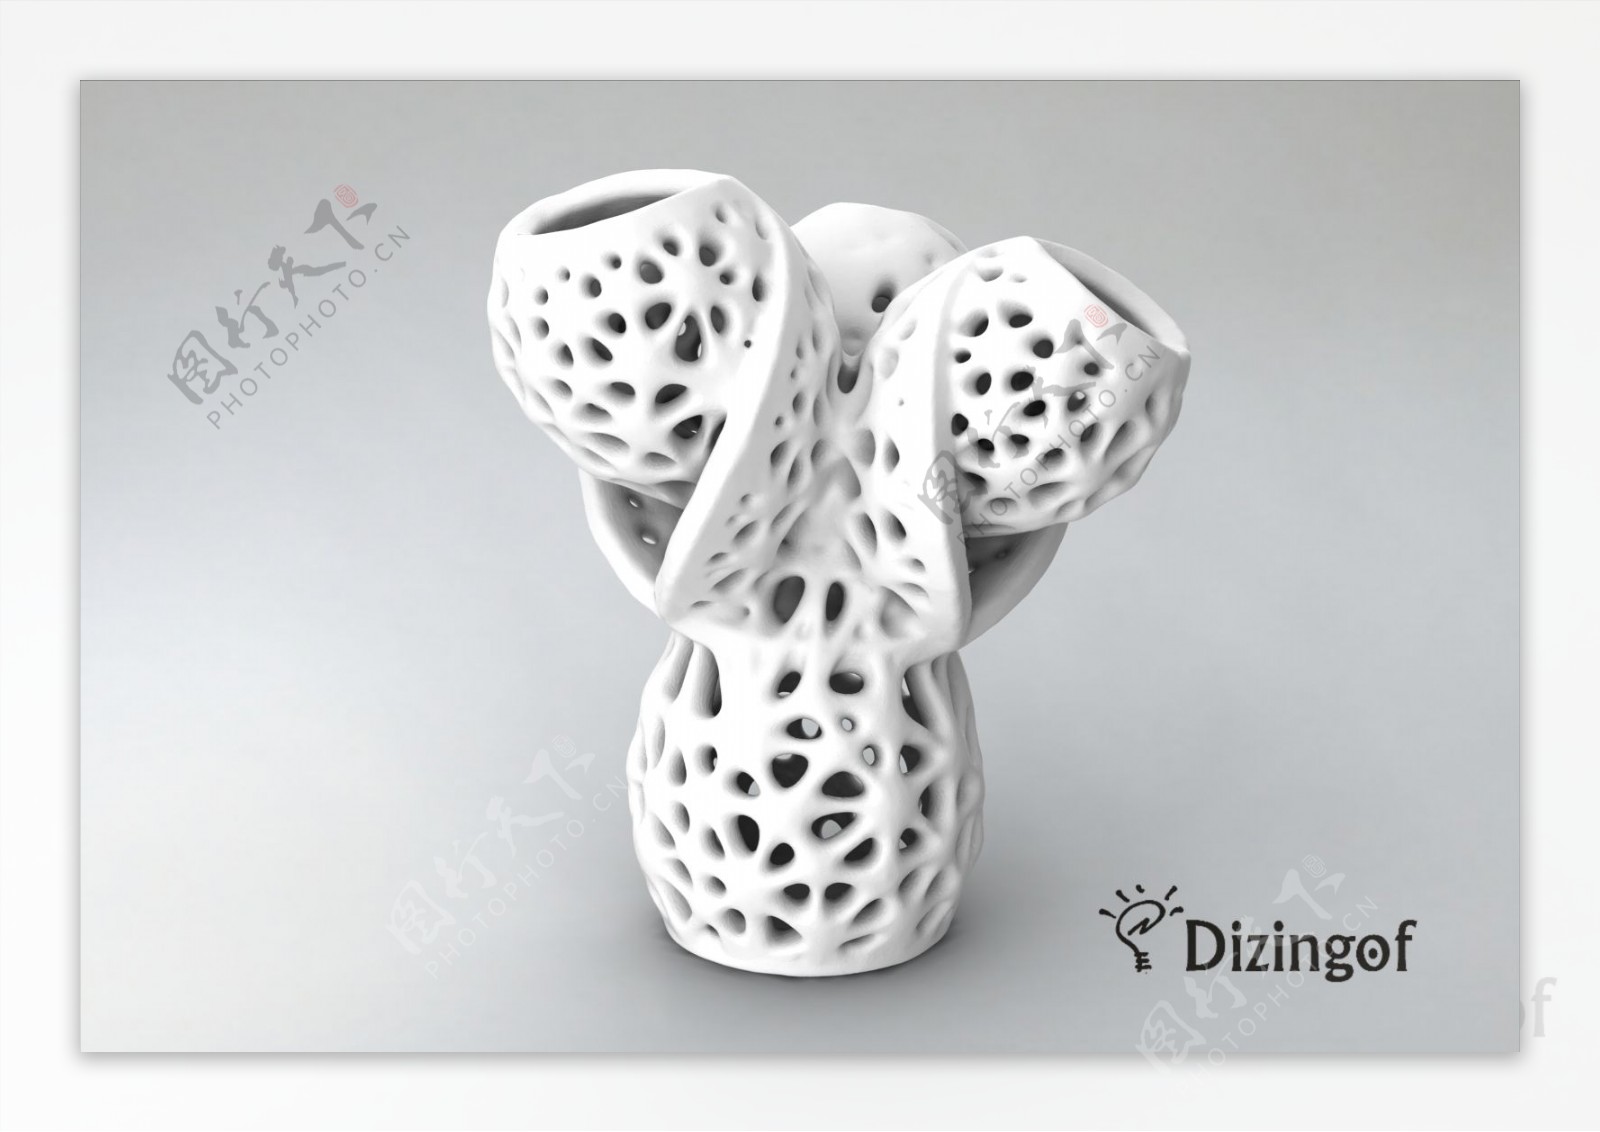 史密斯Delaunay数学的花瓶陶瓷的dizingof